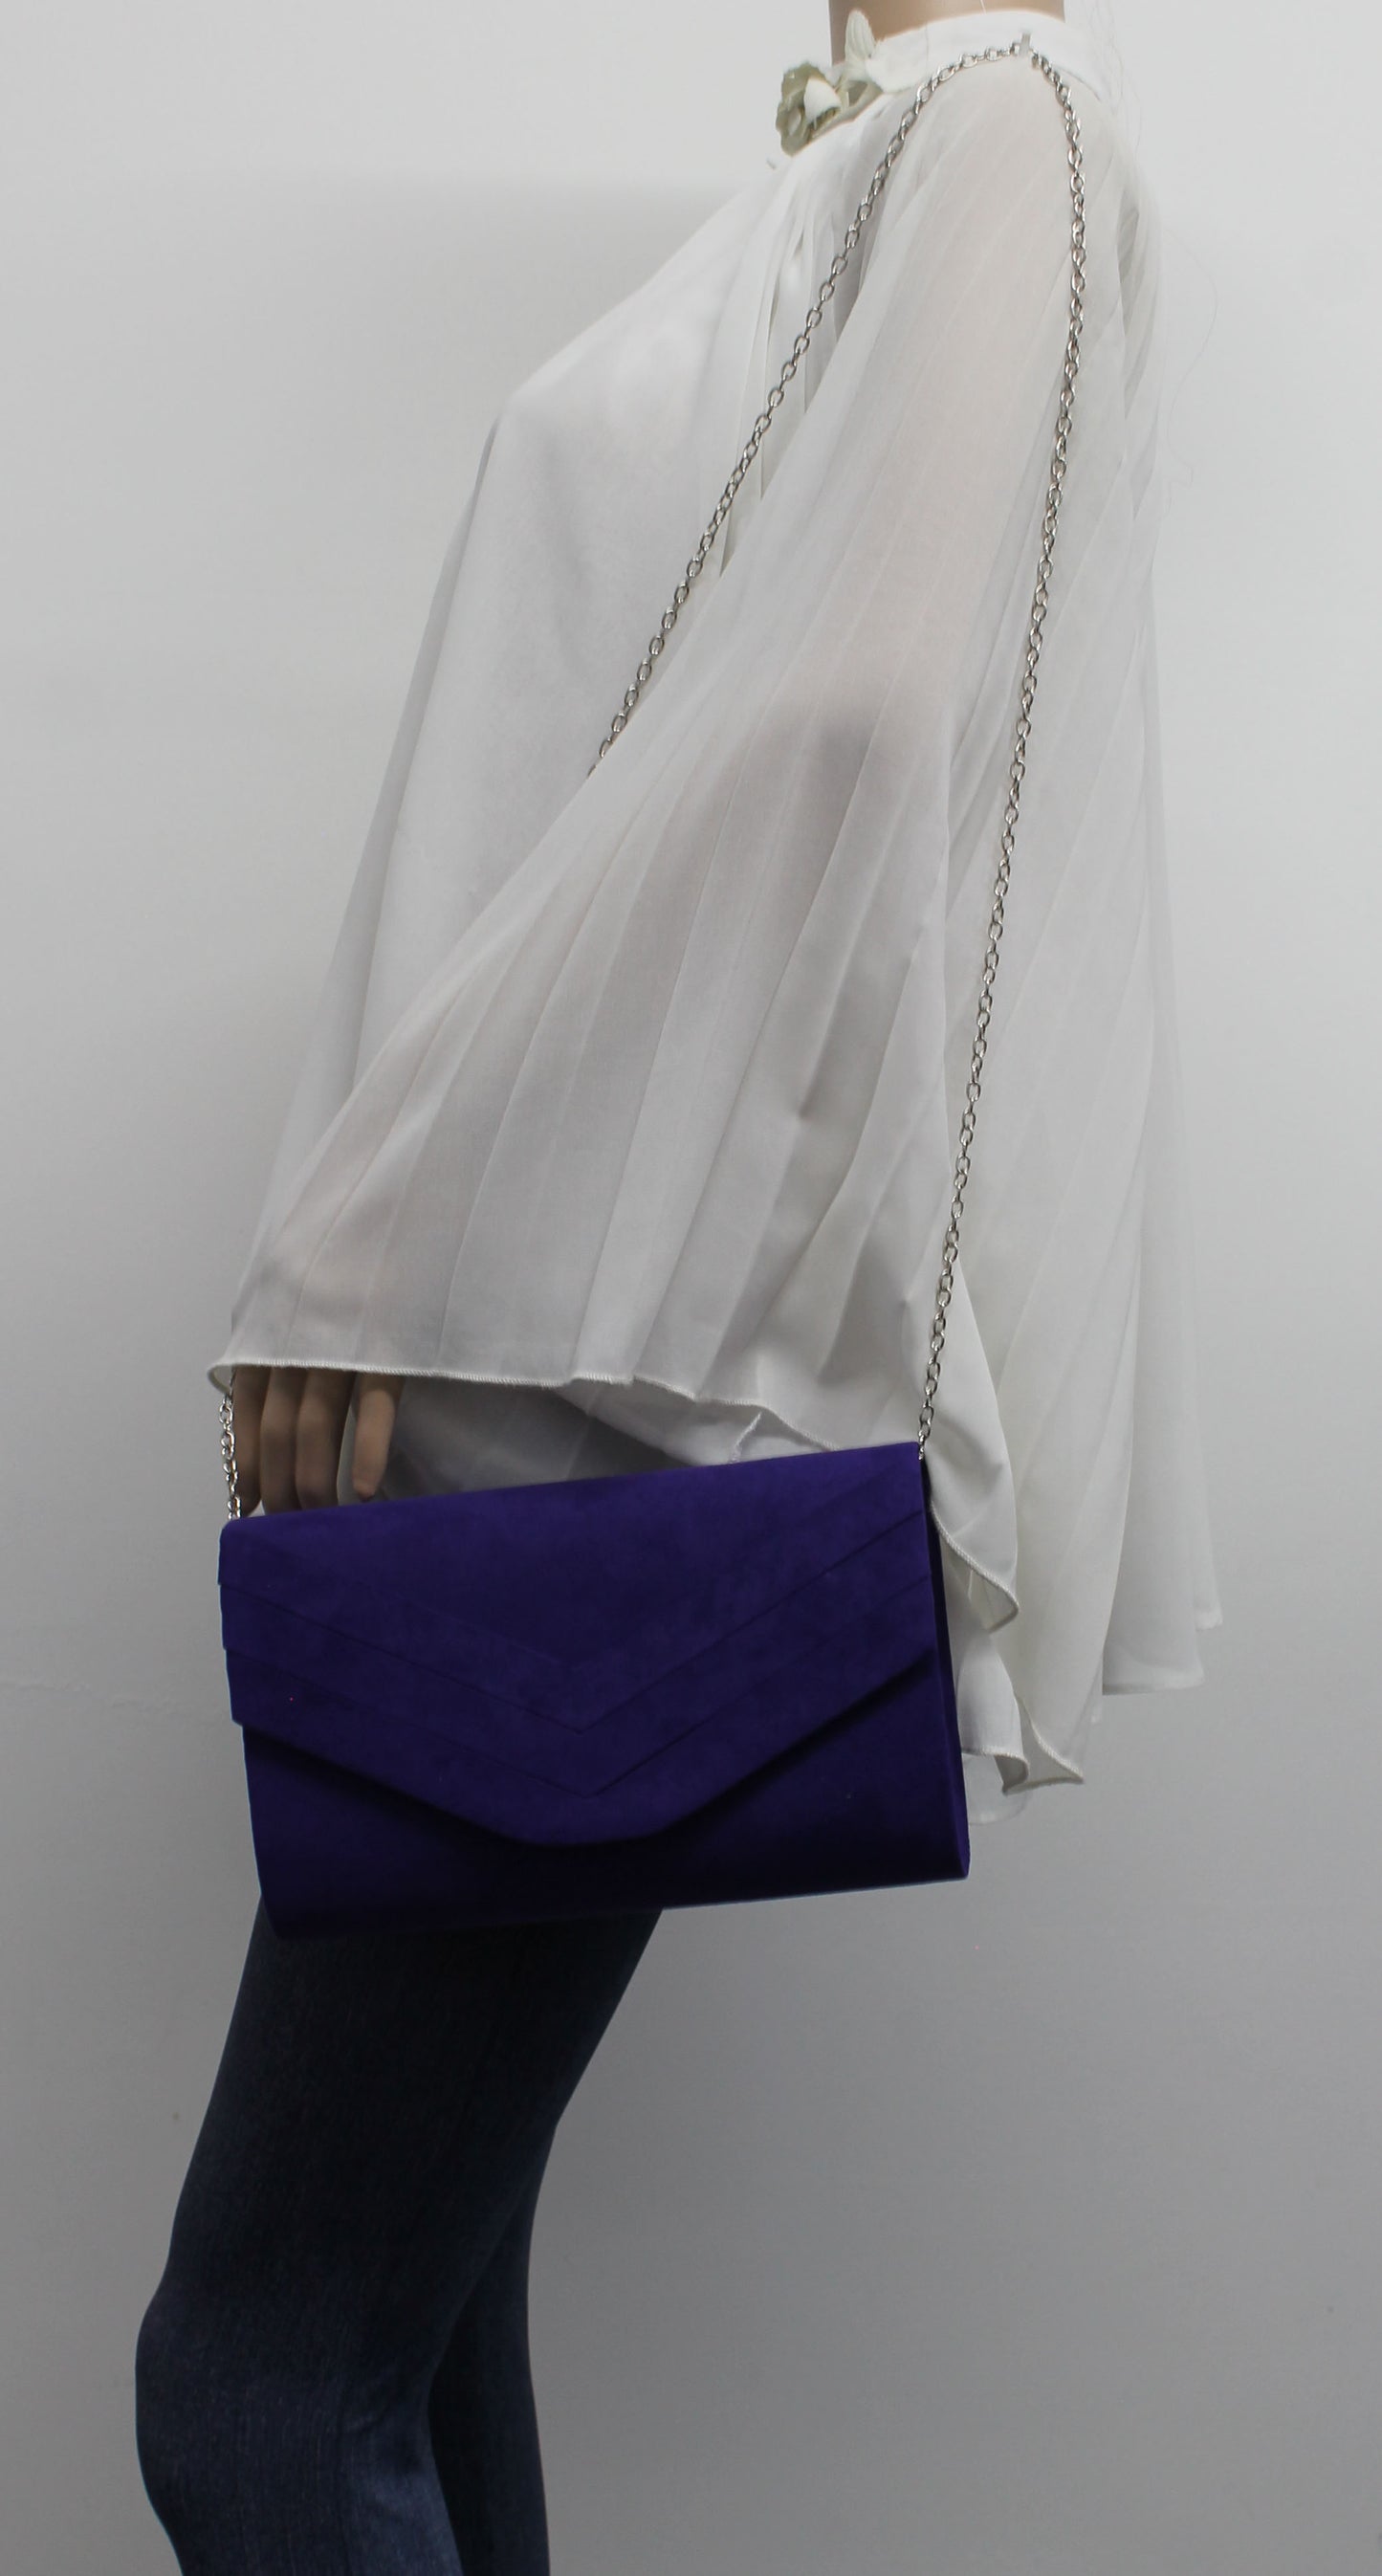 SWANKYSWANS Samantha V Detail Clutch Bag Indigo Cute Cheap Clutch Bag For Weddings School and Work